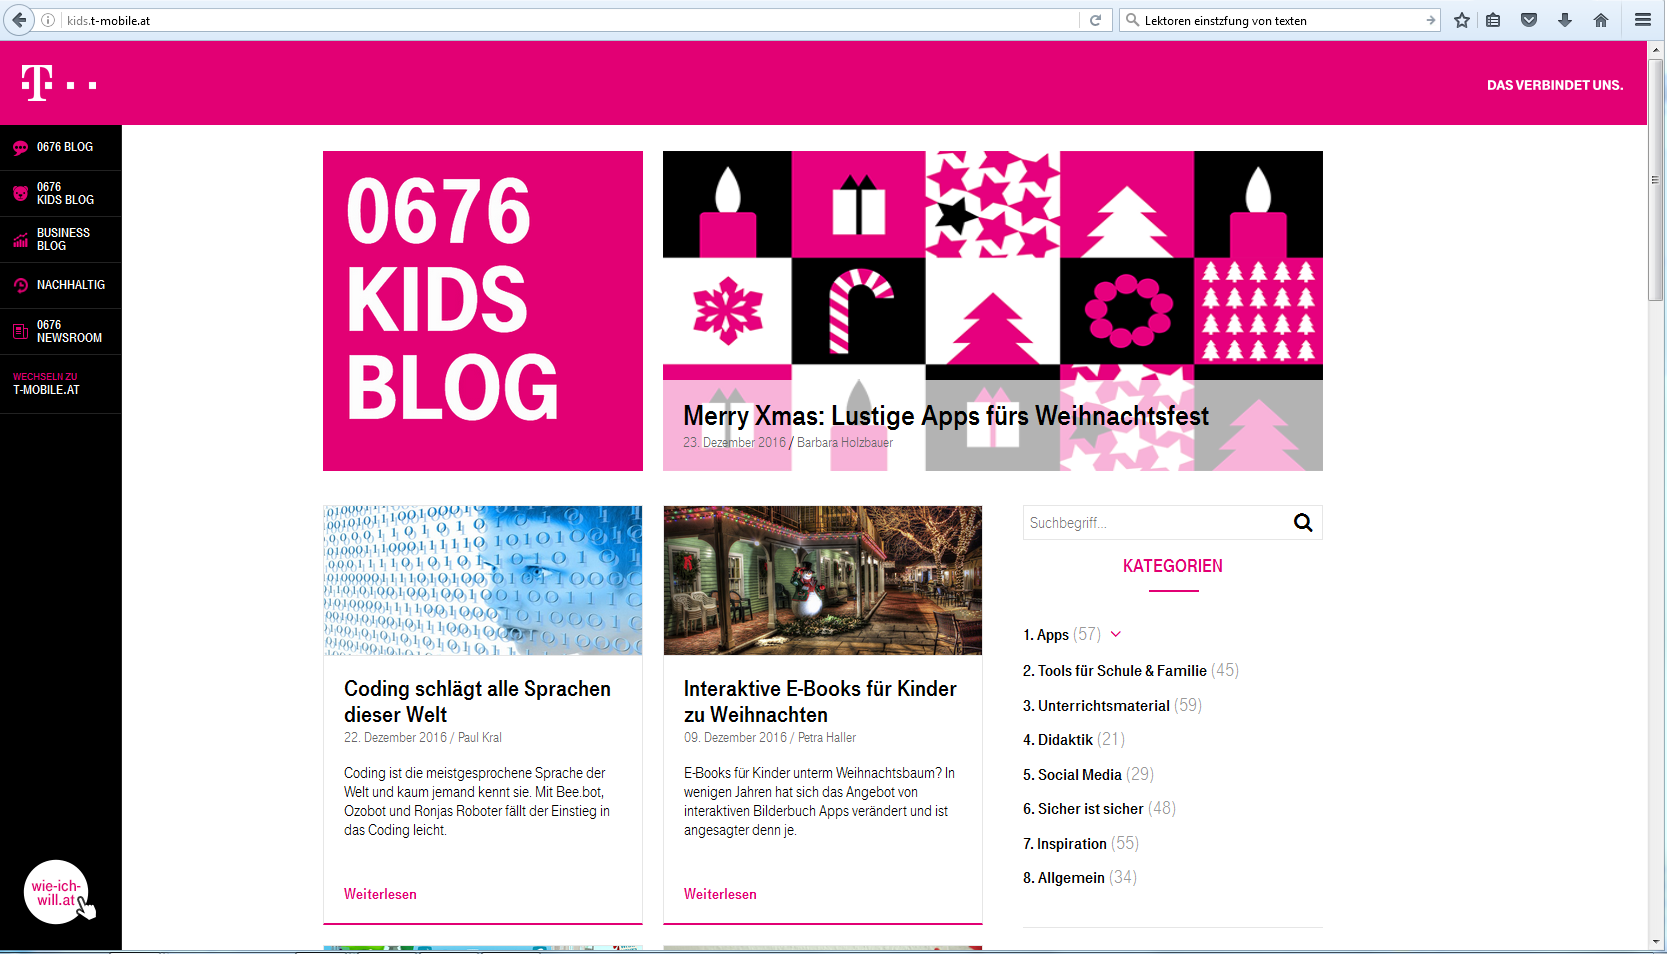 kids.t-mobile.at: Blog über digitale Bildung